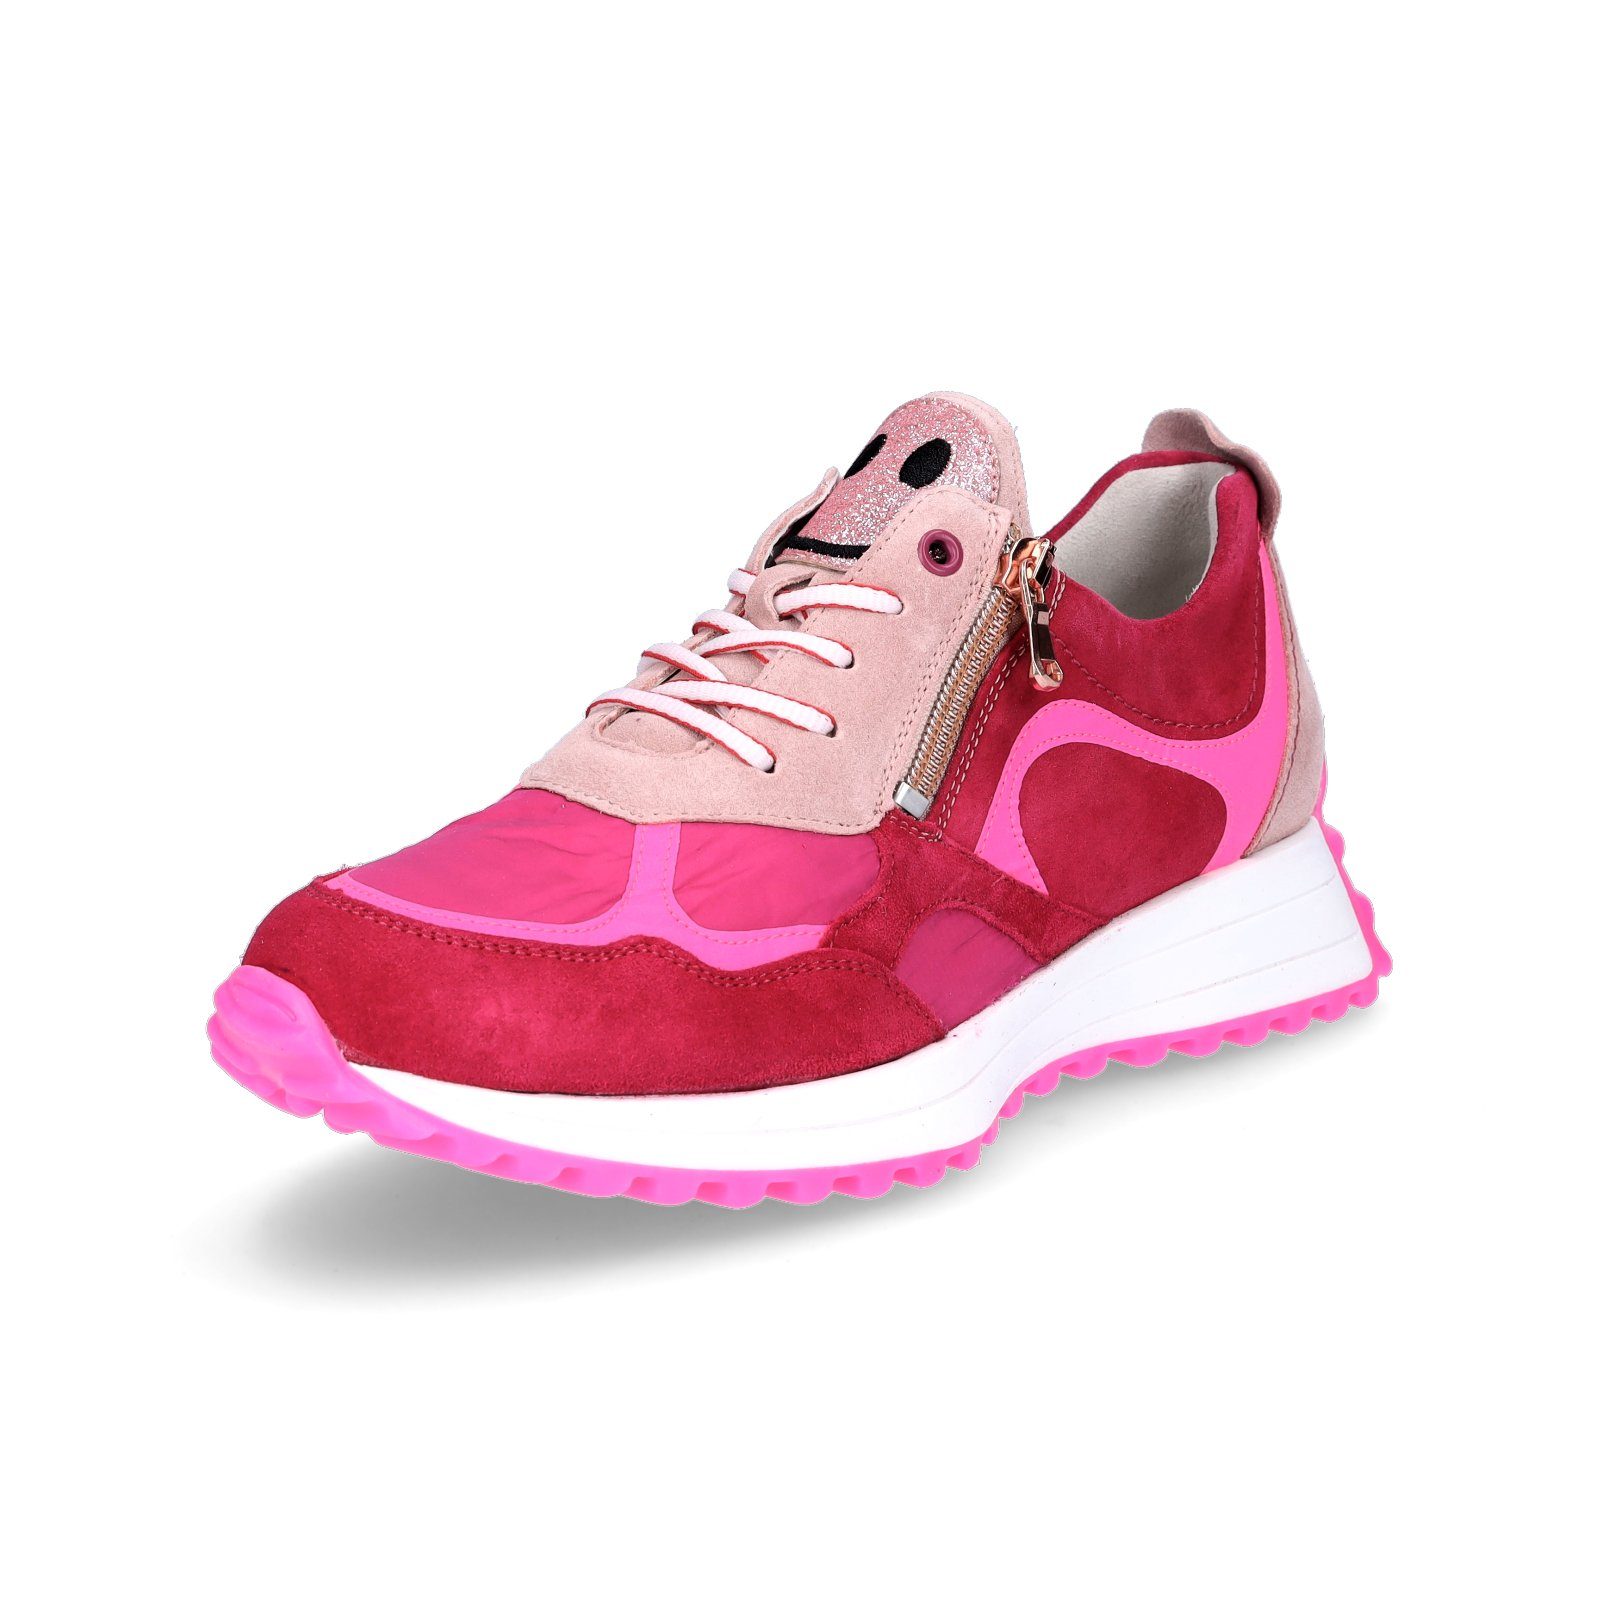 Waldläufer Waldläufer Damen Sneaker pink 5 Sneaker